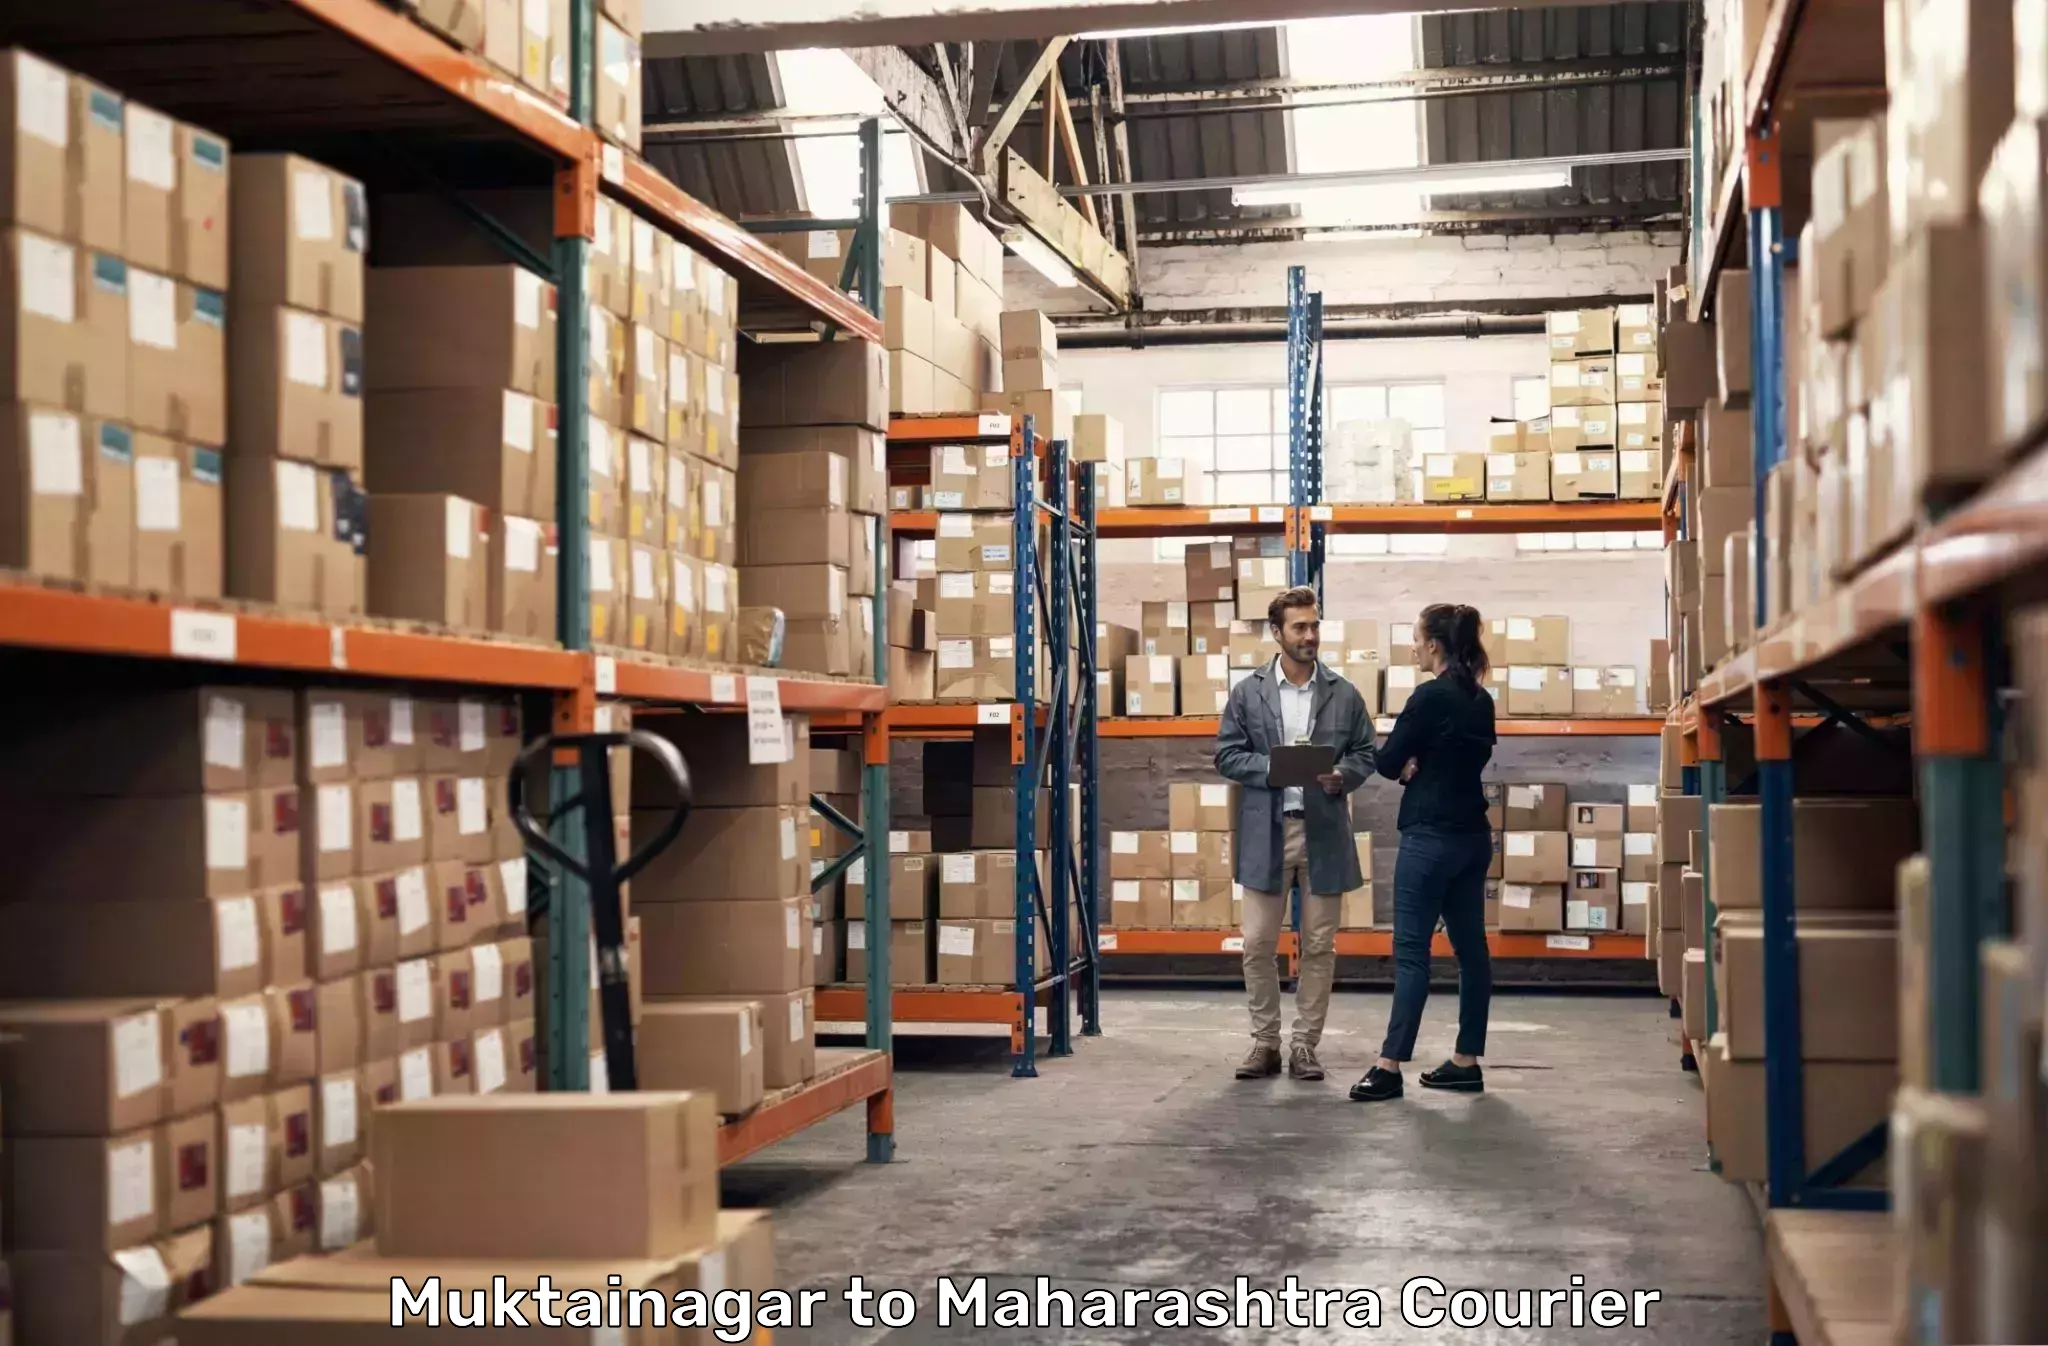 High-capacity parcel service in Muktainagar to Maharashtra